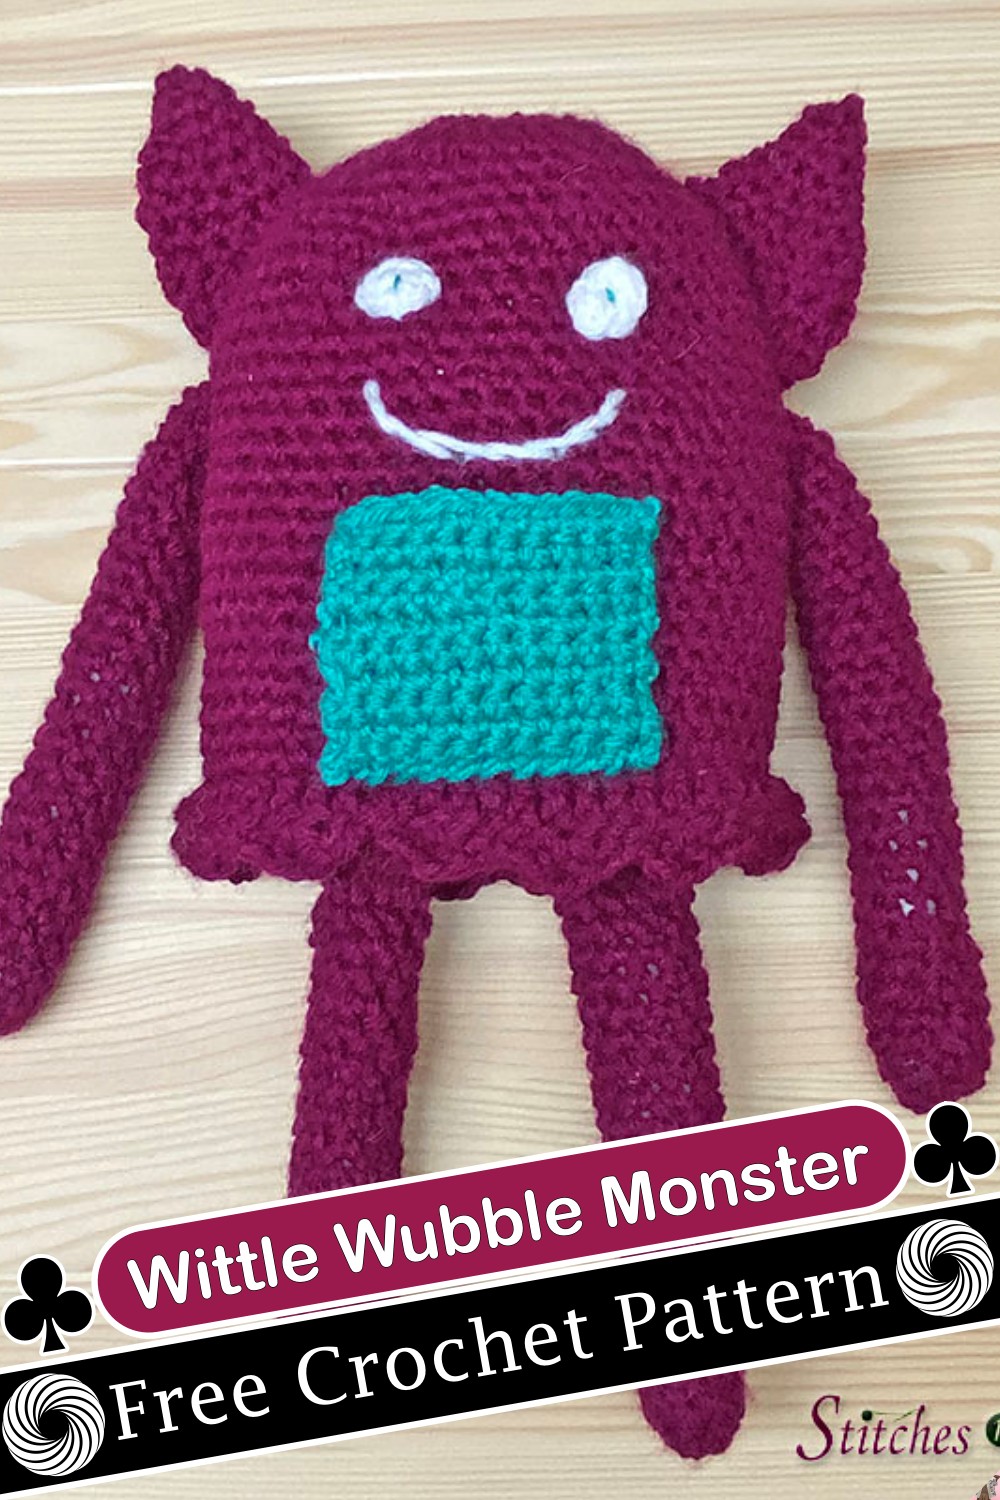 Wittle Wubble Monster